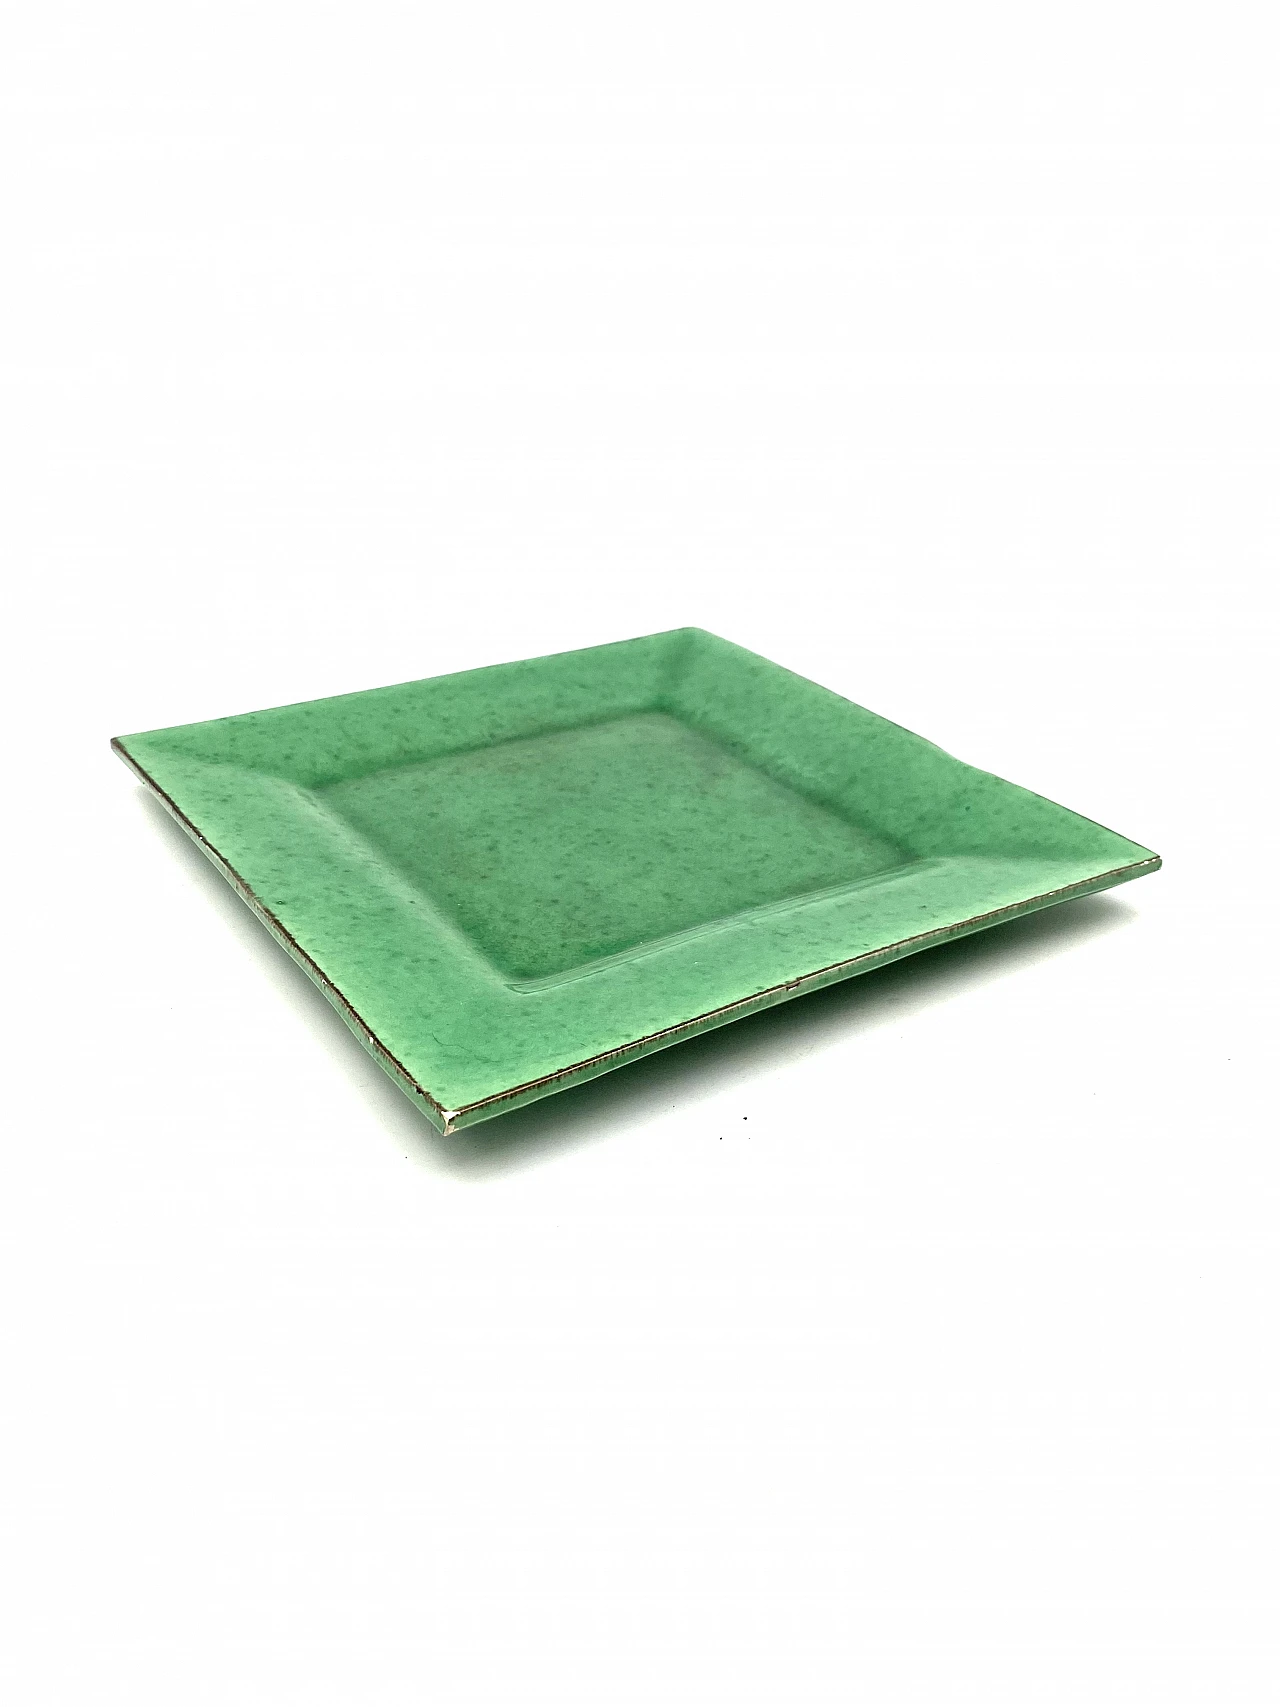 Vide poche in green glazed ceramic, 1960s 13